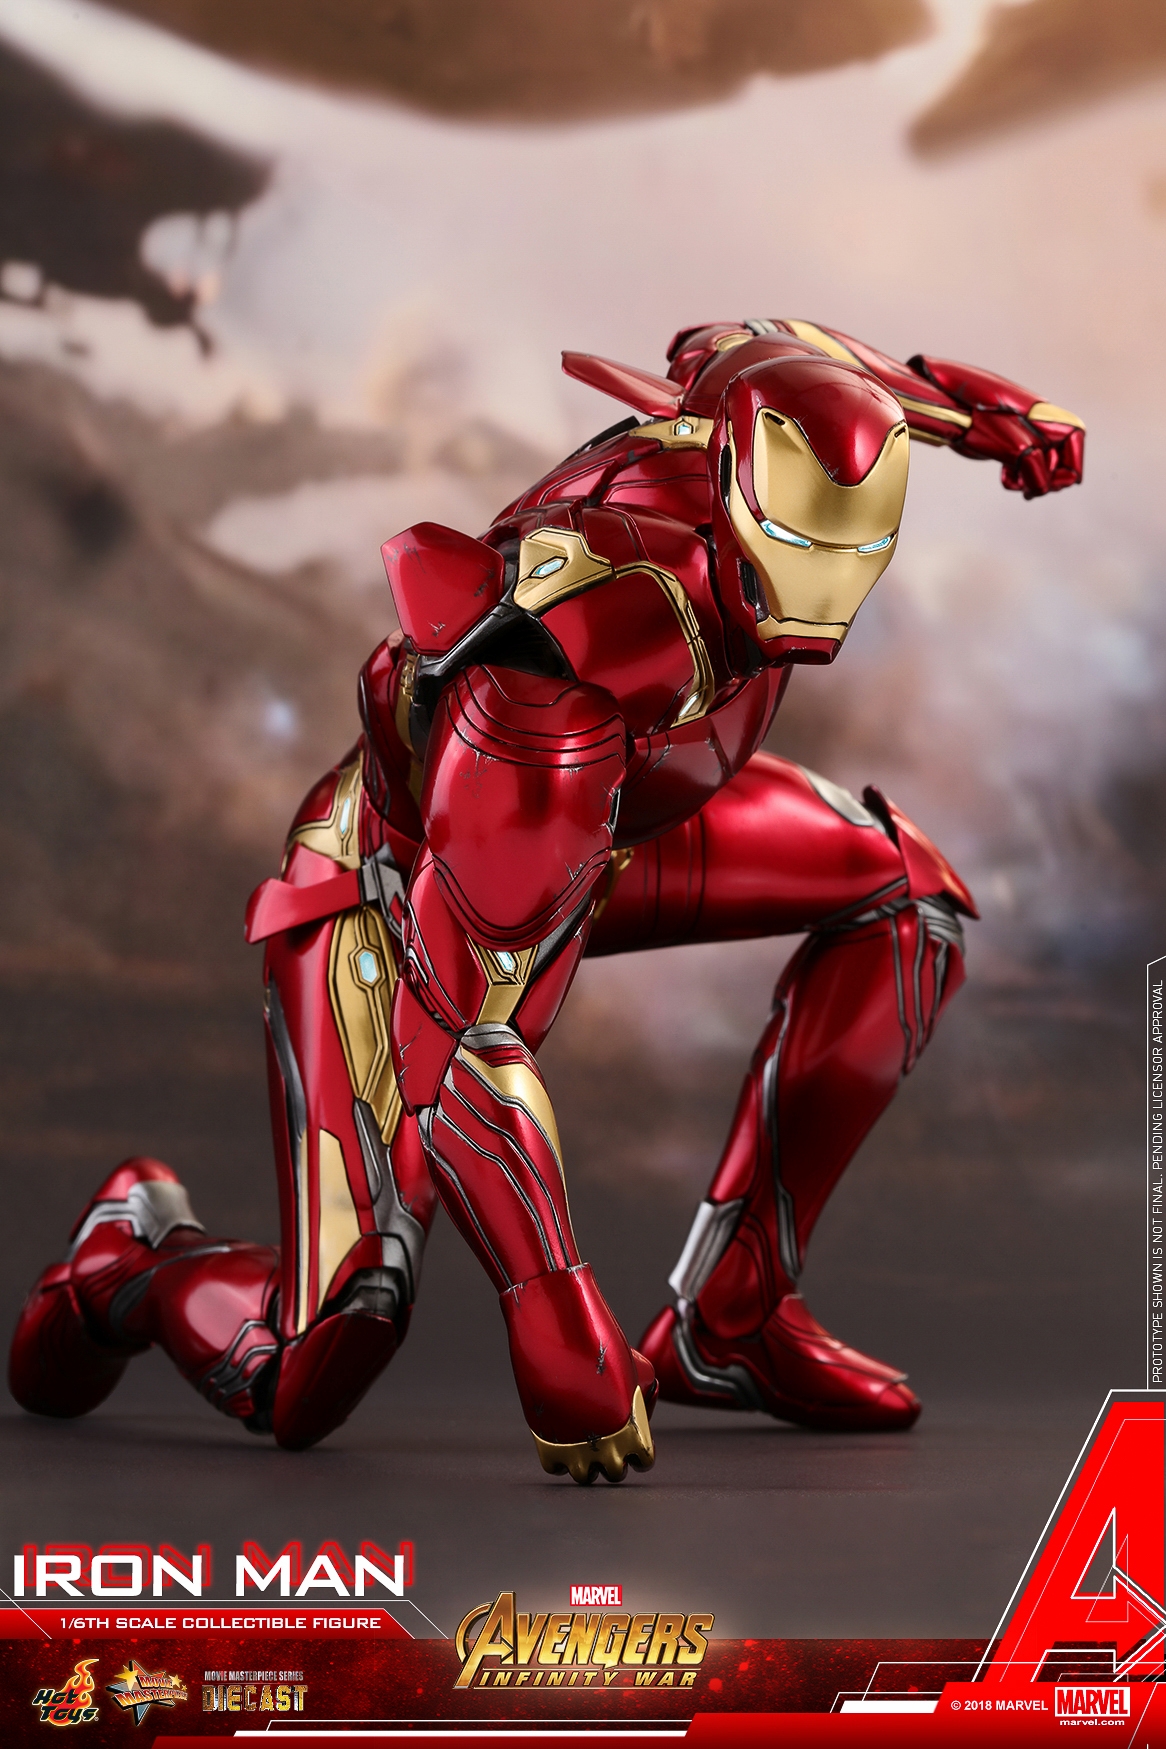 Hot-Toys-MMS473D23-Avengers-Infinity-War-Iron-Man-Collectible-Figure-017.jpg